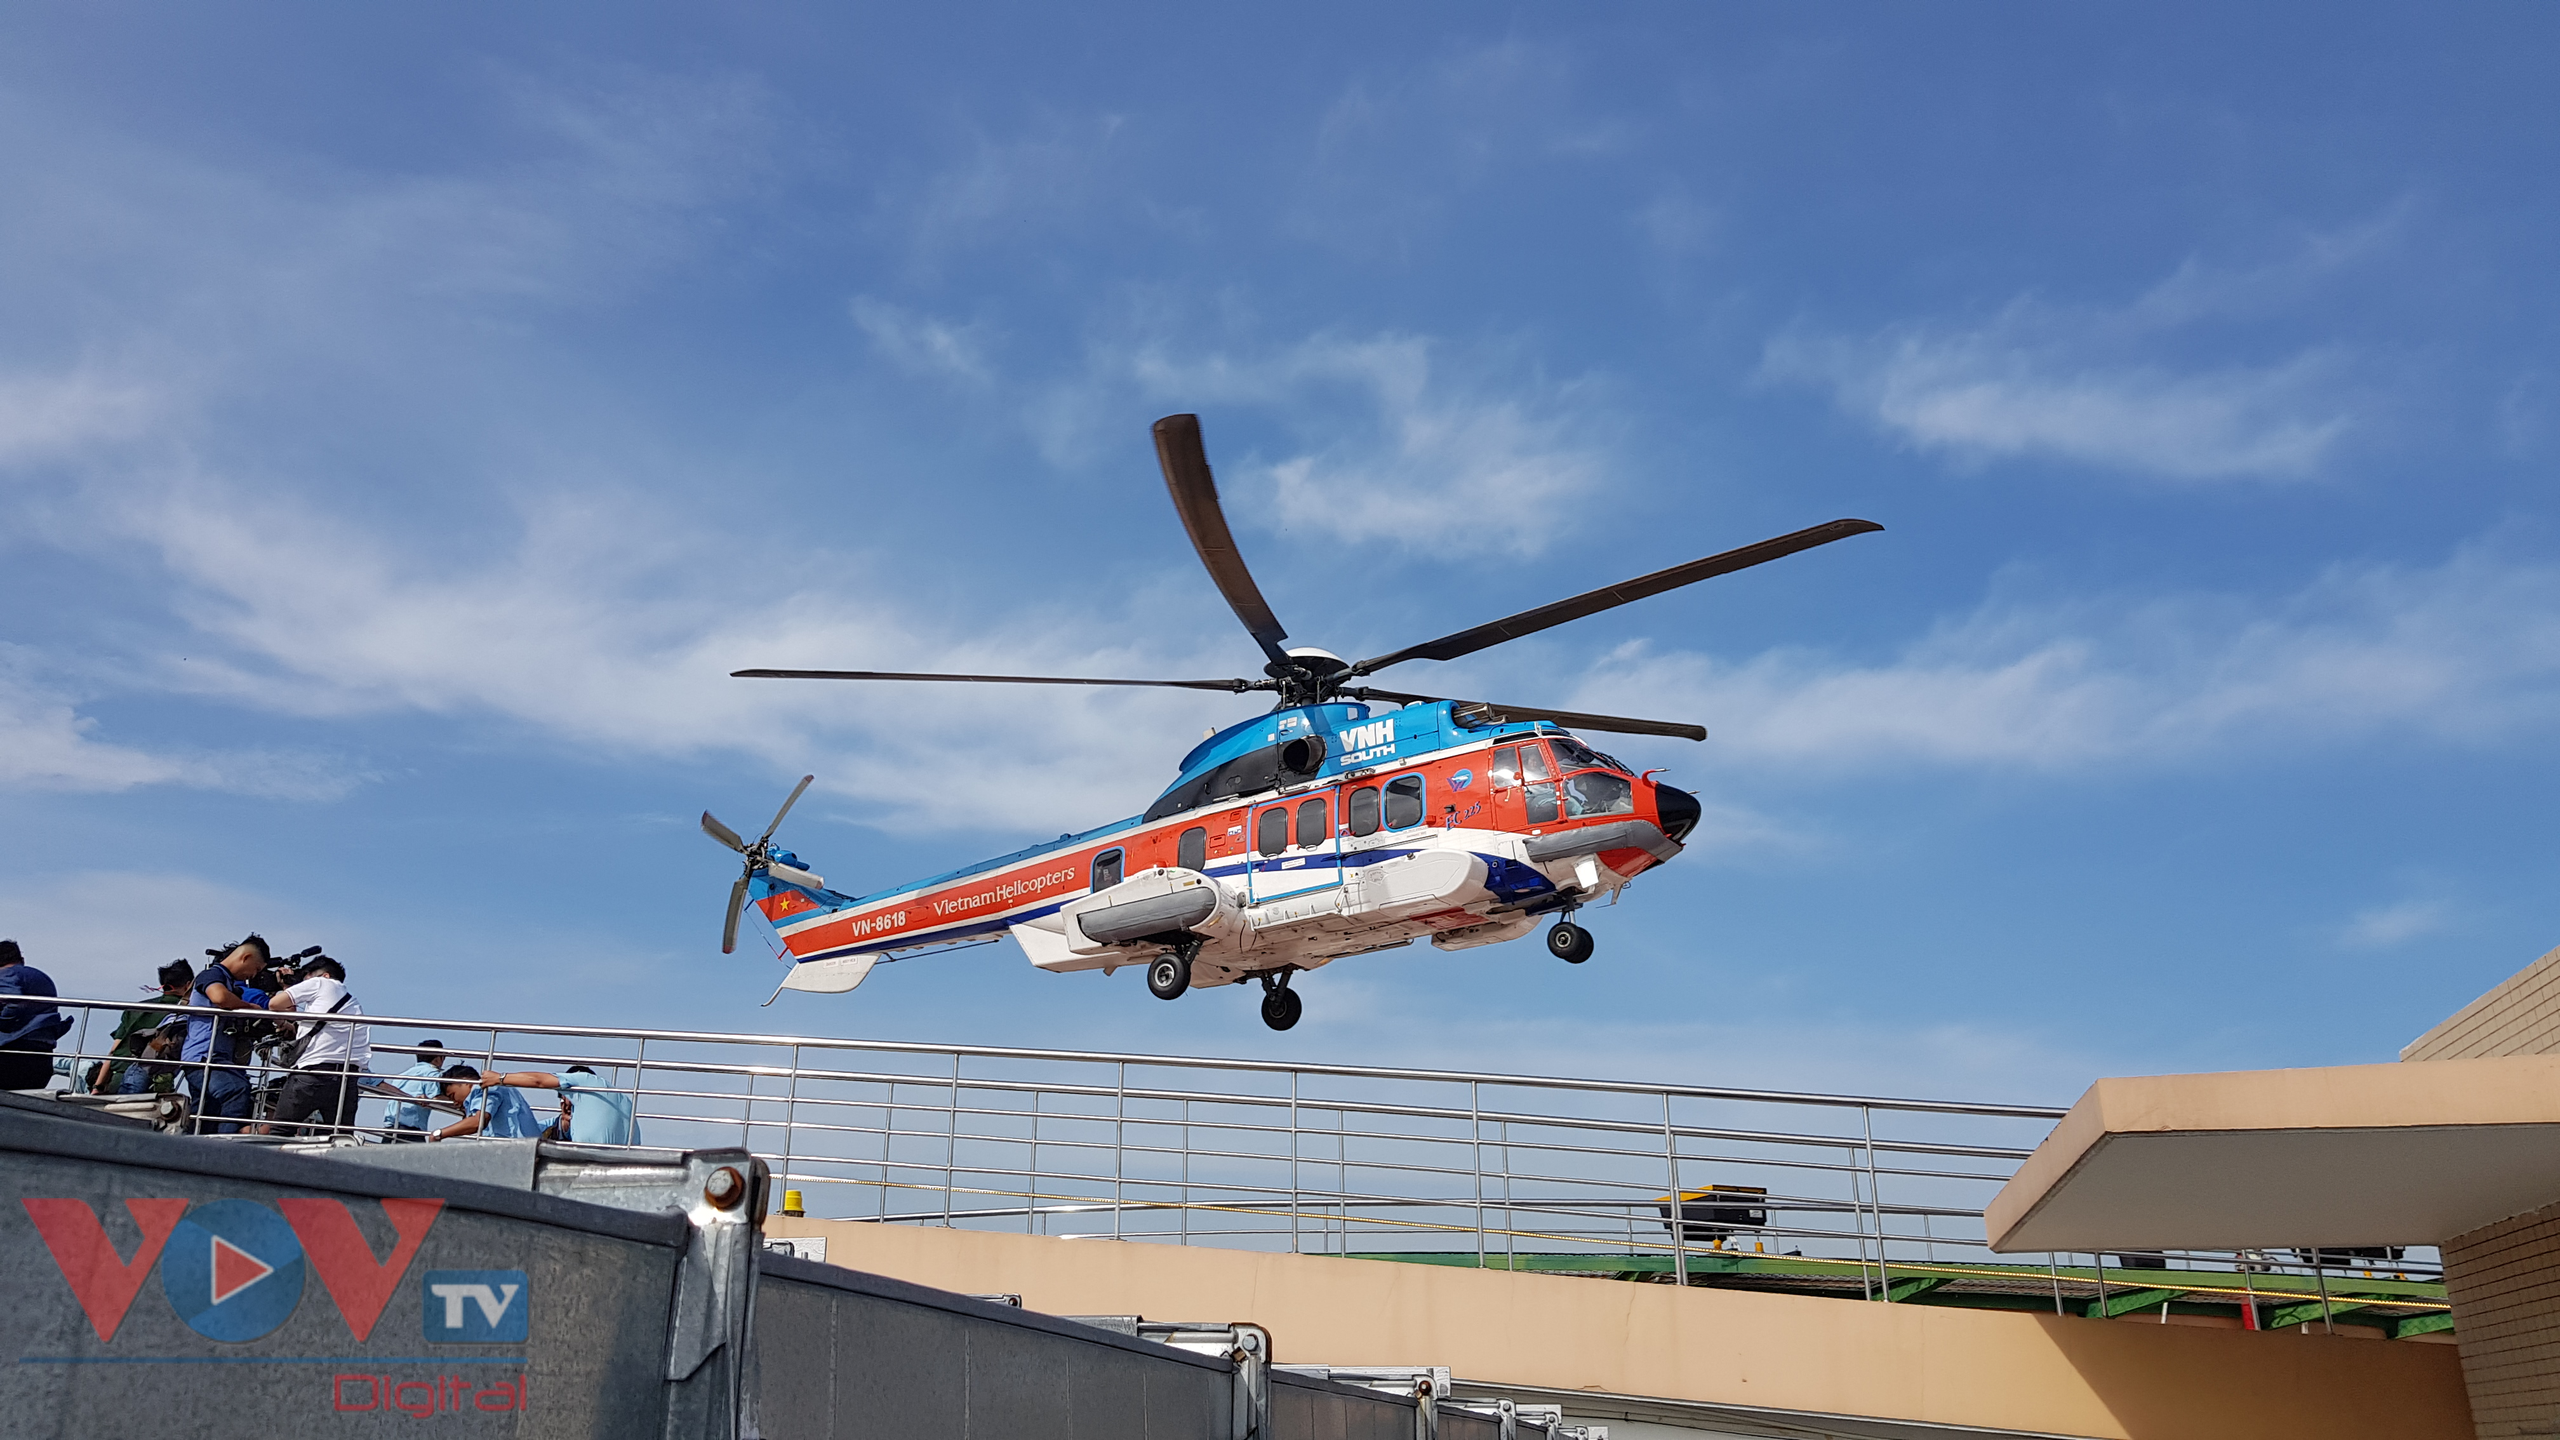 Bệnh viện quân y 175 sẽ có trực thăng Melicopters để cấp cứu ngư dân - Ảnh 1.